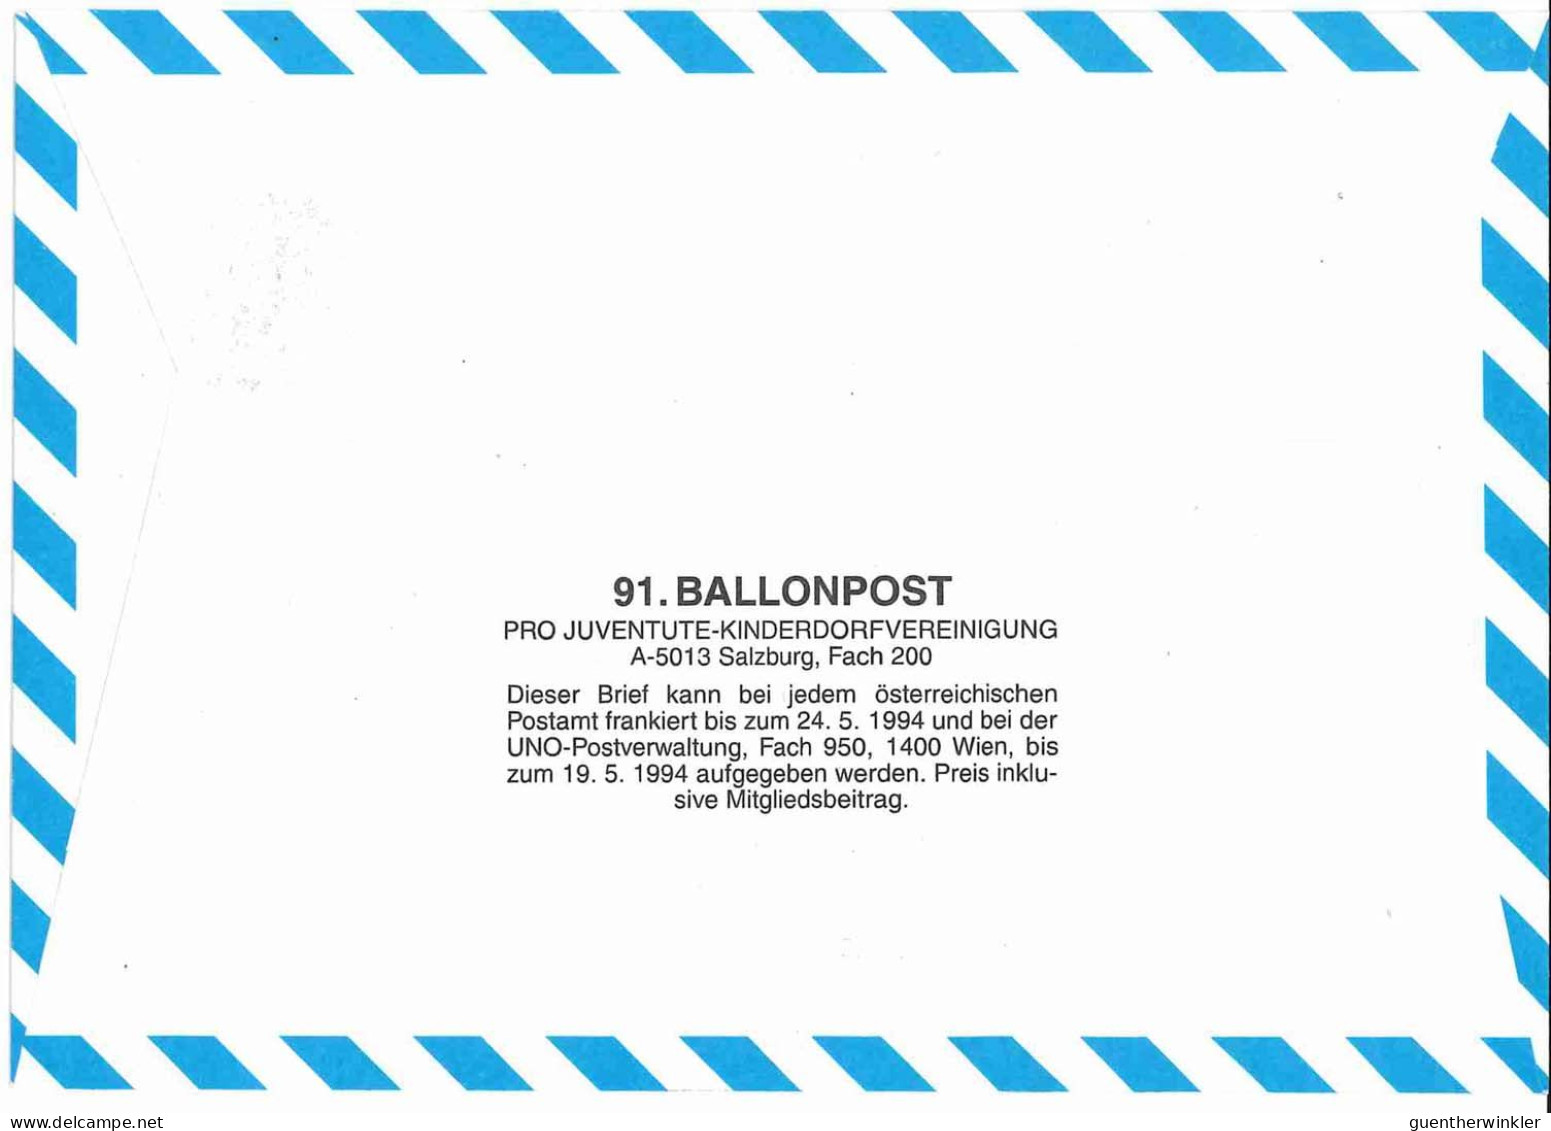 Regulärer Ballonpostflug Nr. 91a Der Pro Juventute [RBP91a] - Balloon Covers